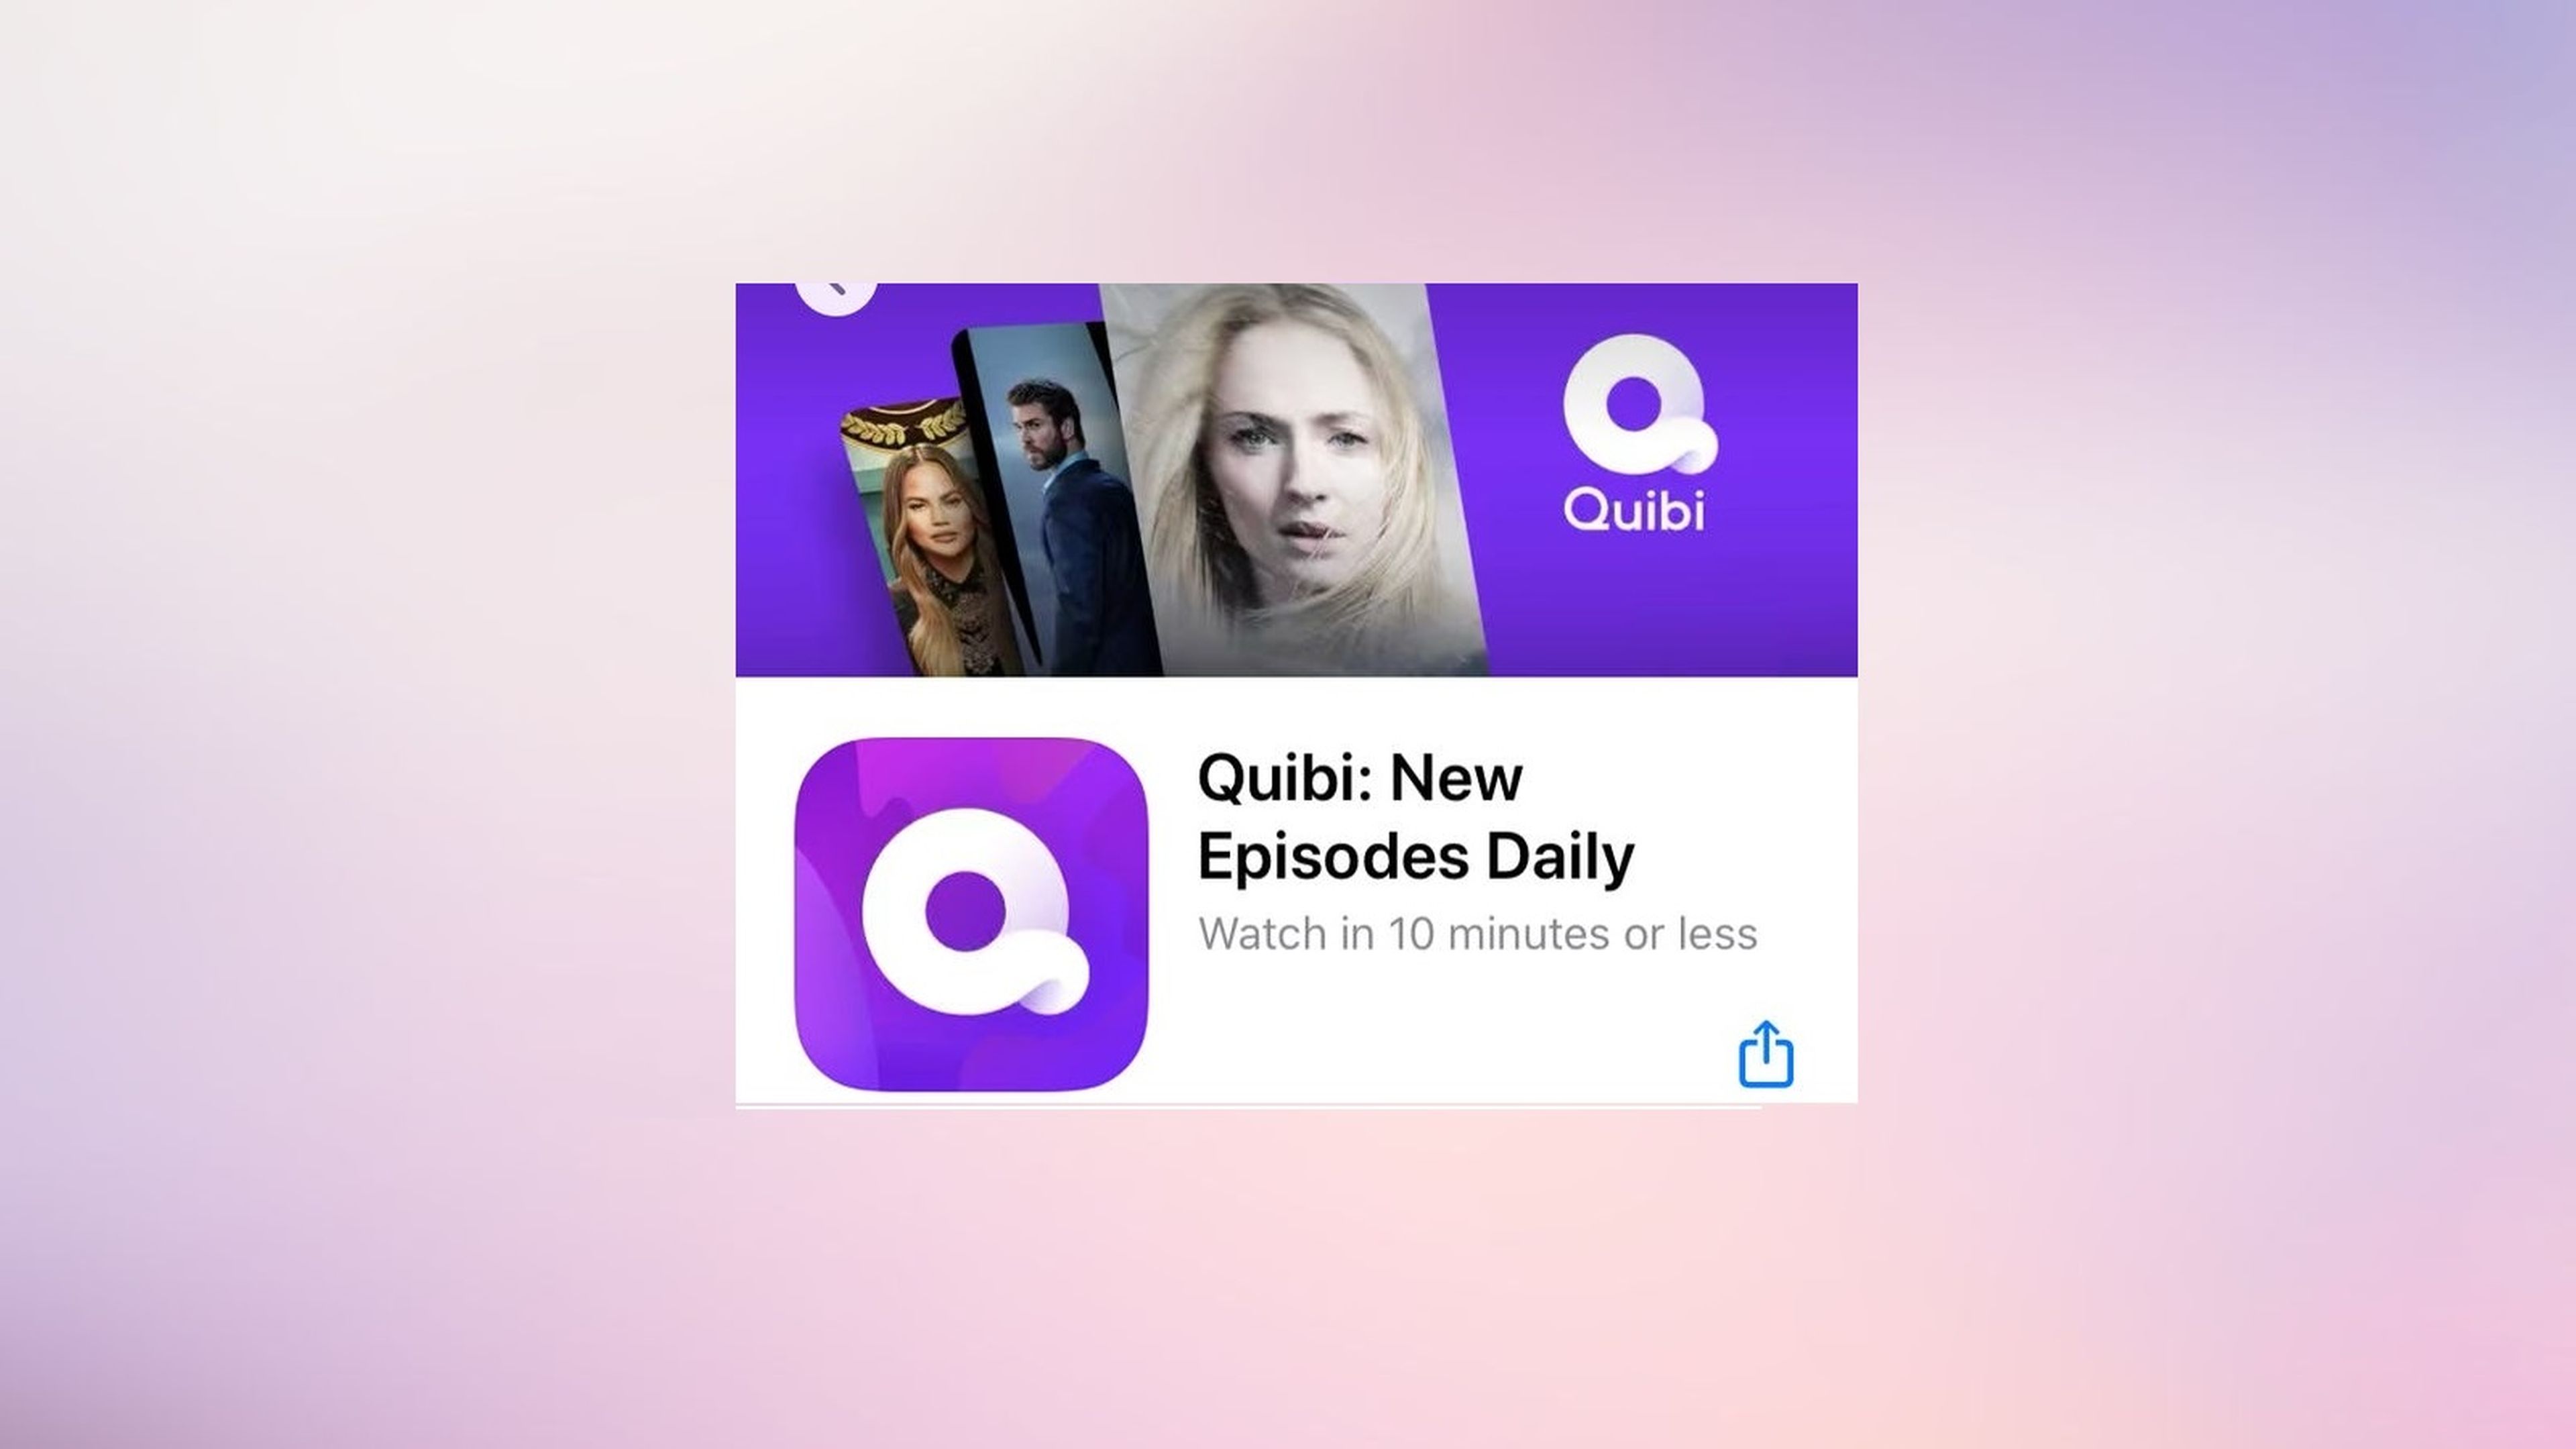 La app de Quibi ya se encuentra disponible (en Estados Unidos) en la App Store y la Play Store.